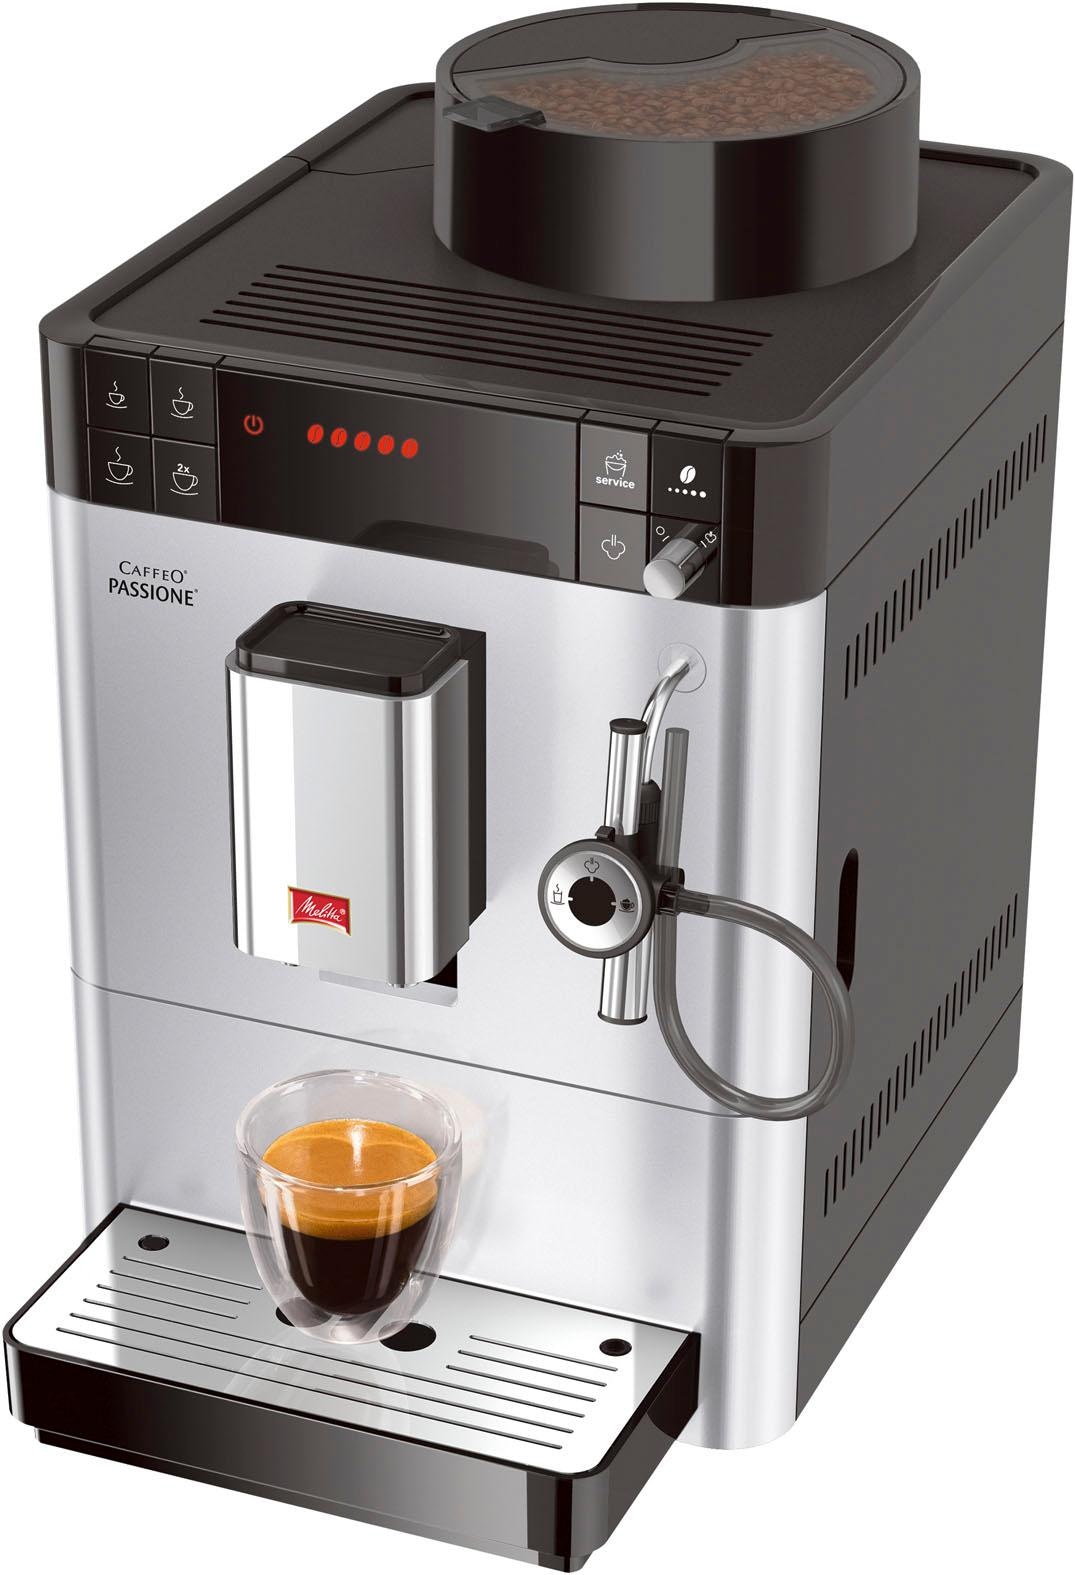 Melitta Kaffeevollautomat »Passione® One Reinigung Touch OTTO für gemahlen, frisch im jetzt silber«, F53/1-101, Tassengenau Shop Online & Service-Taste Entkalkung